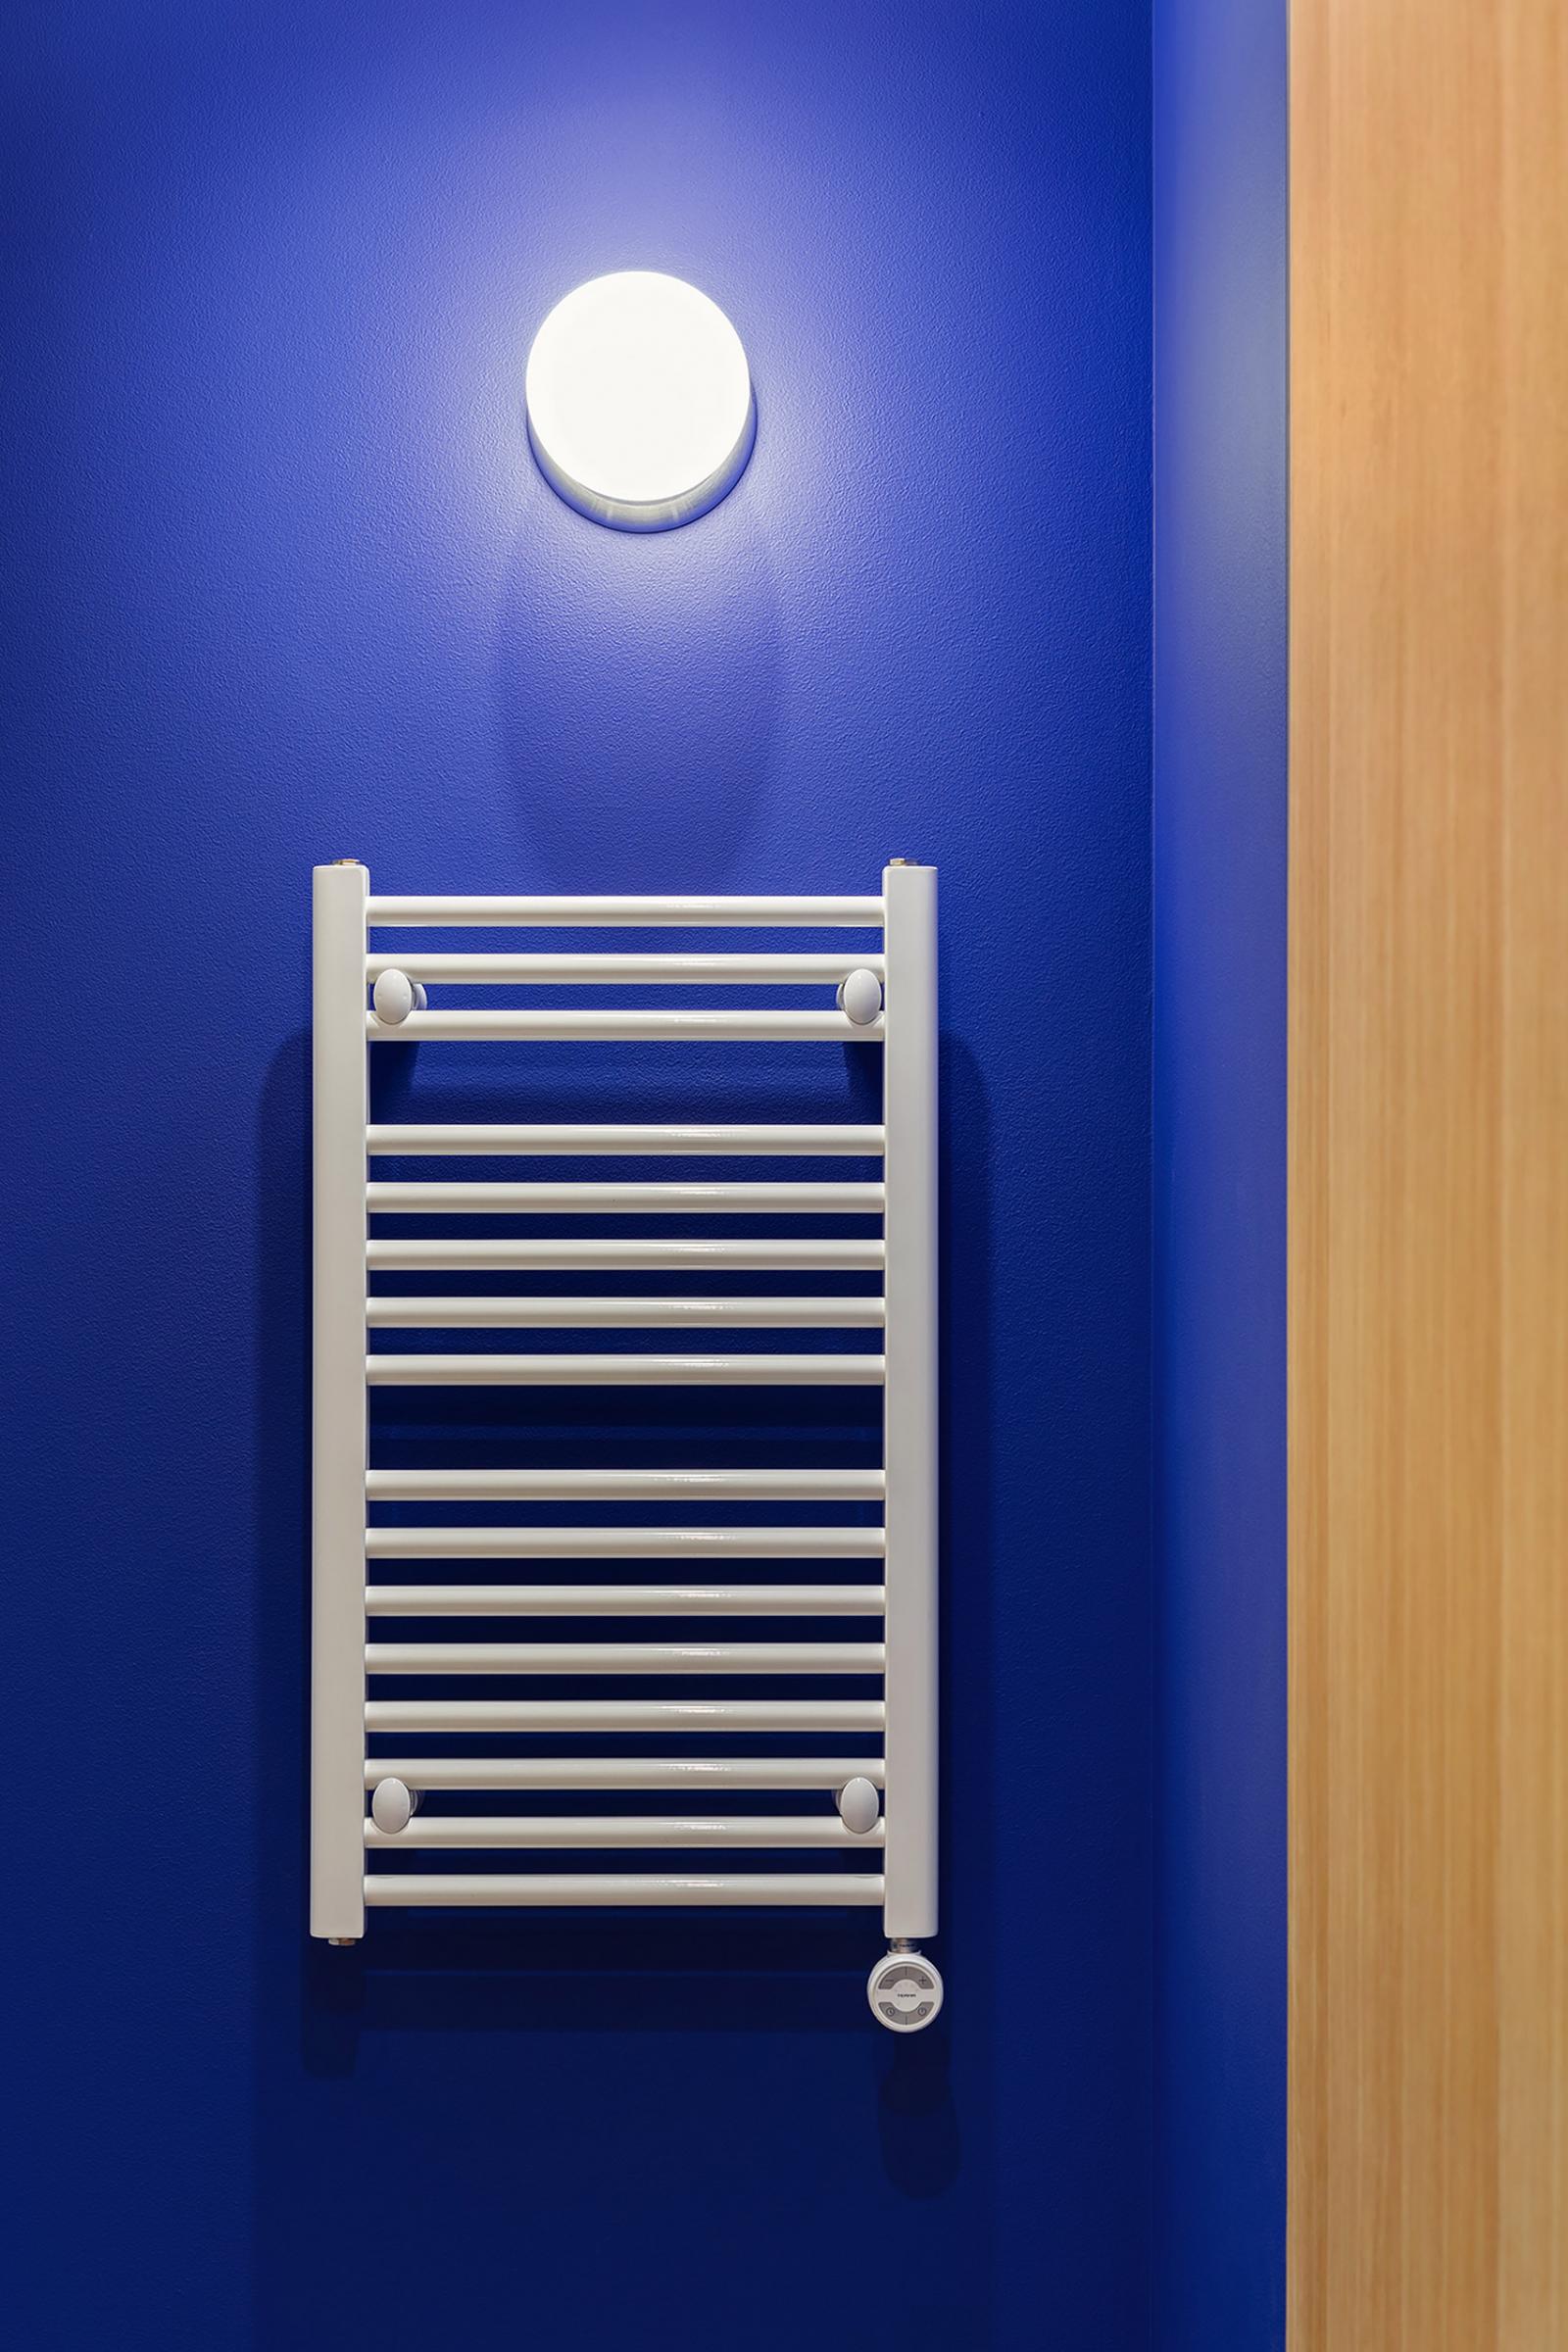 Hình ảnh cận cảnh mảng tường trong căn hộ 65m2 sơn màu xanh coban, đèn tường ánh sáng trắng